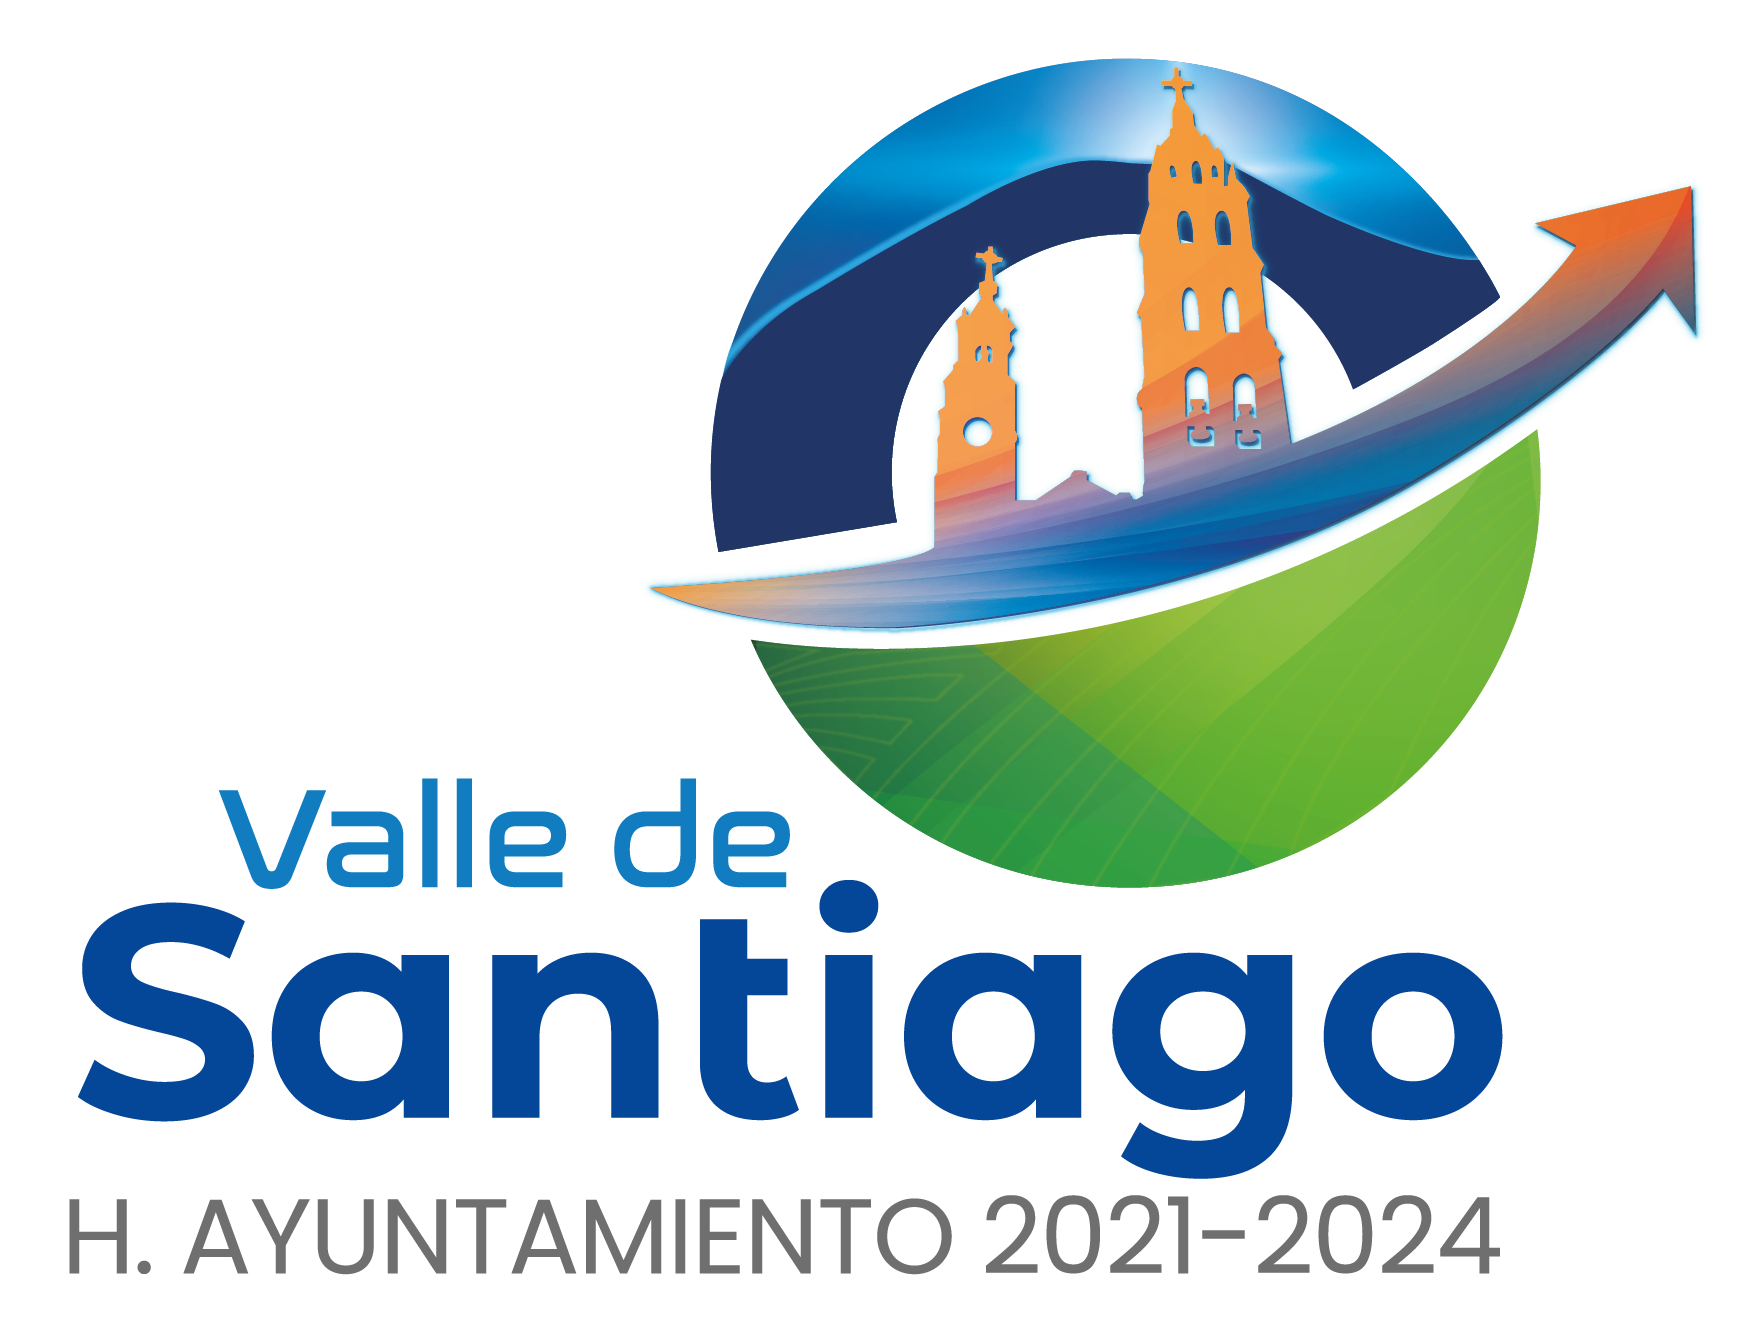 H. Ayuntamiento Valle de Santiago